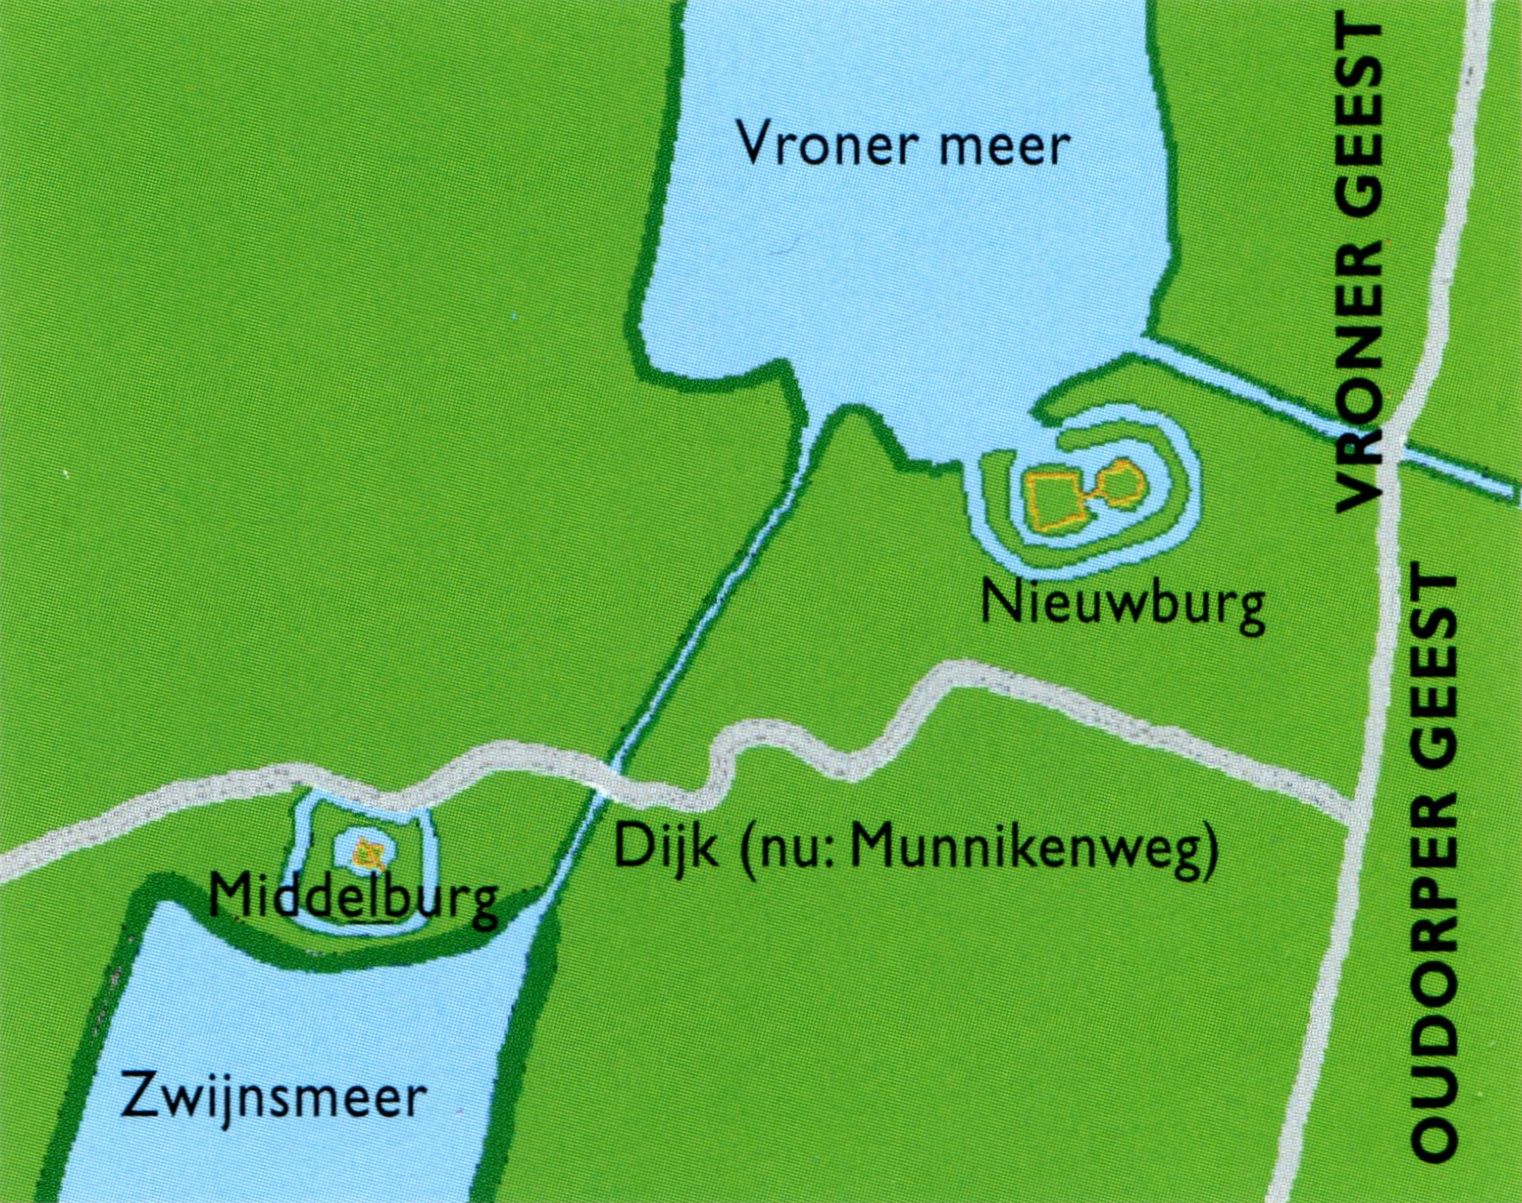 De omgeving van de Middelburg en Nieuwburg in de 13e eeuw